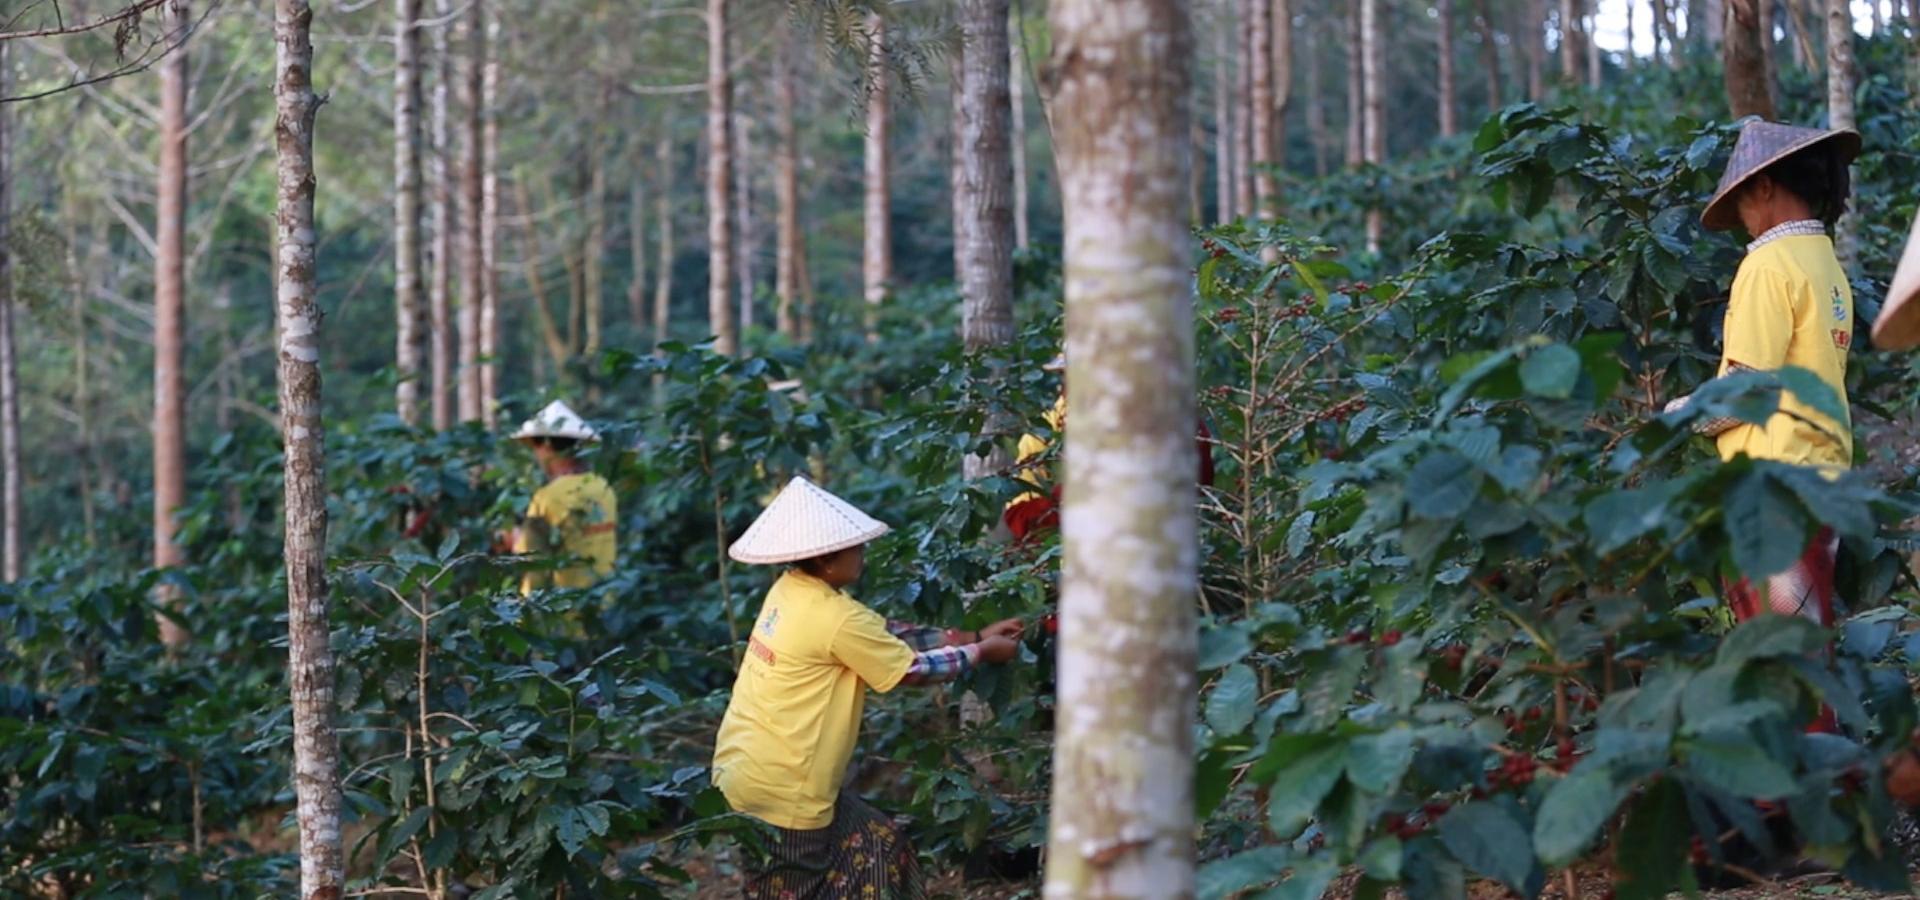 Myanmar Coffee Harvest Workers